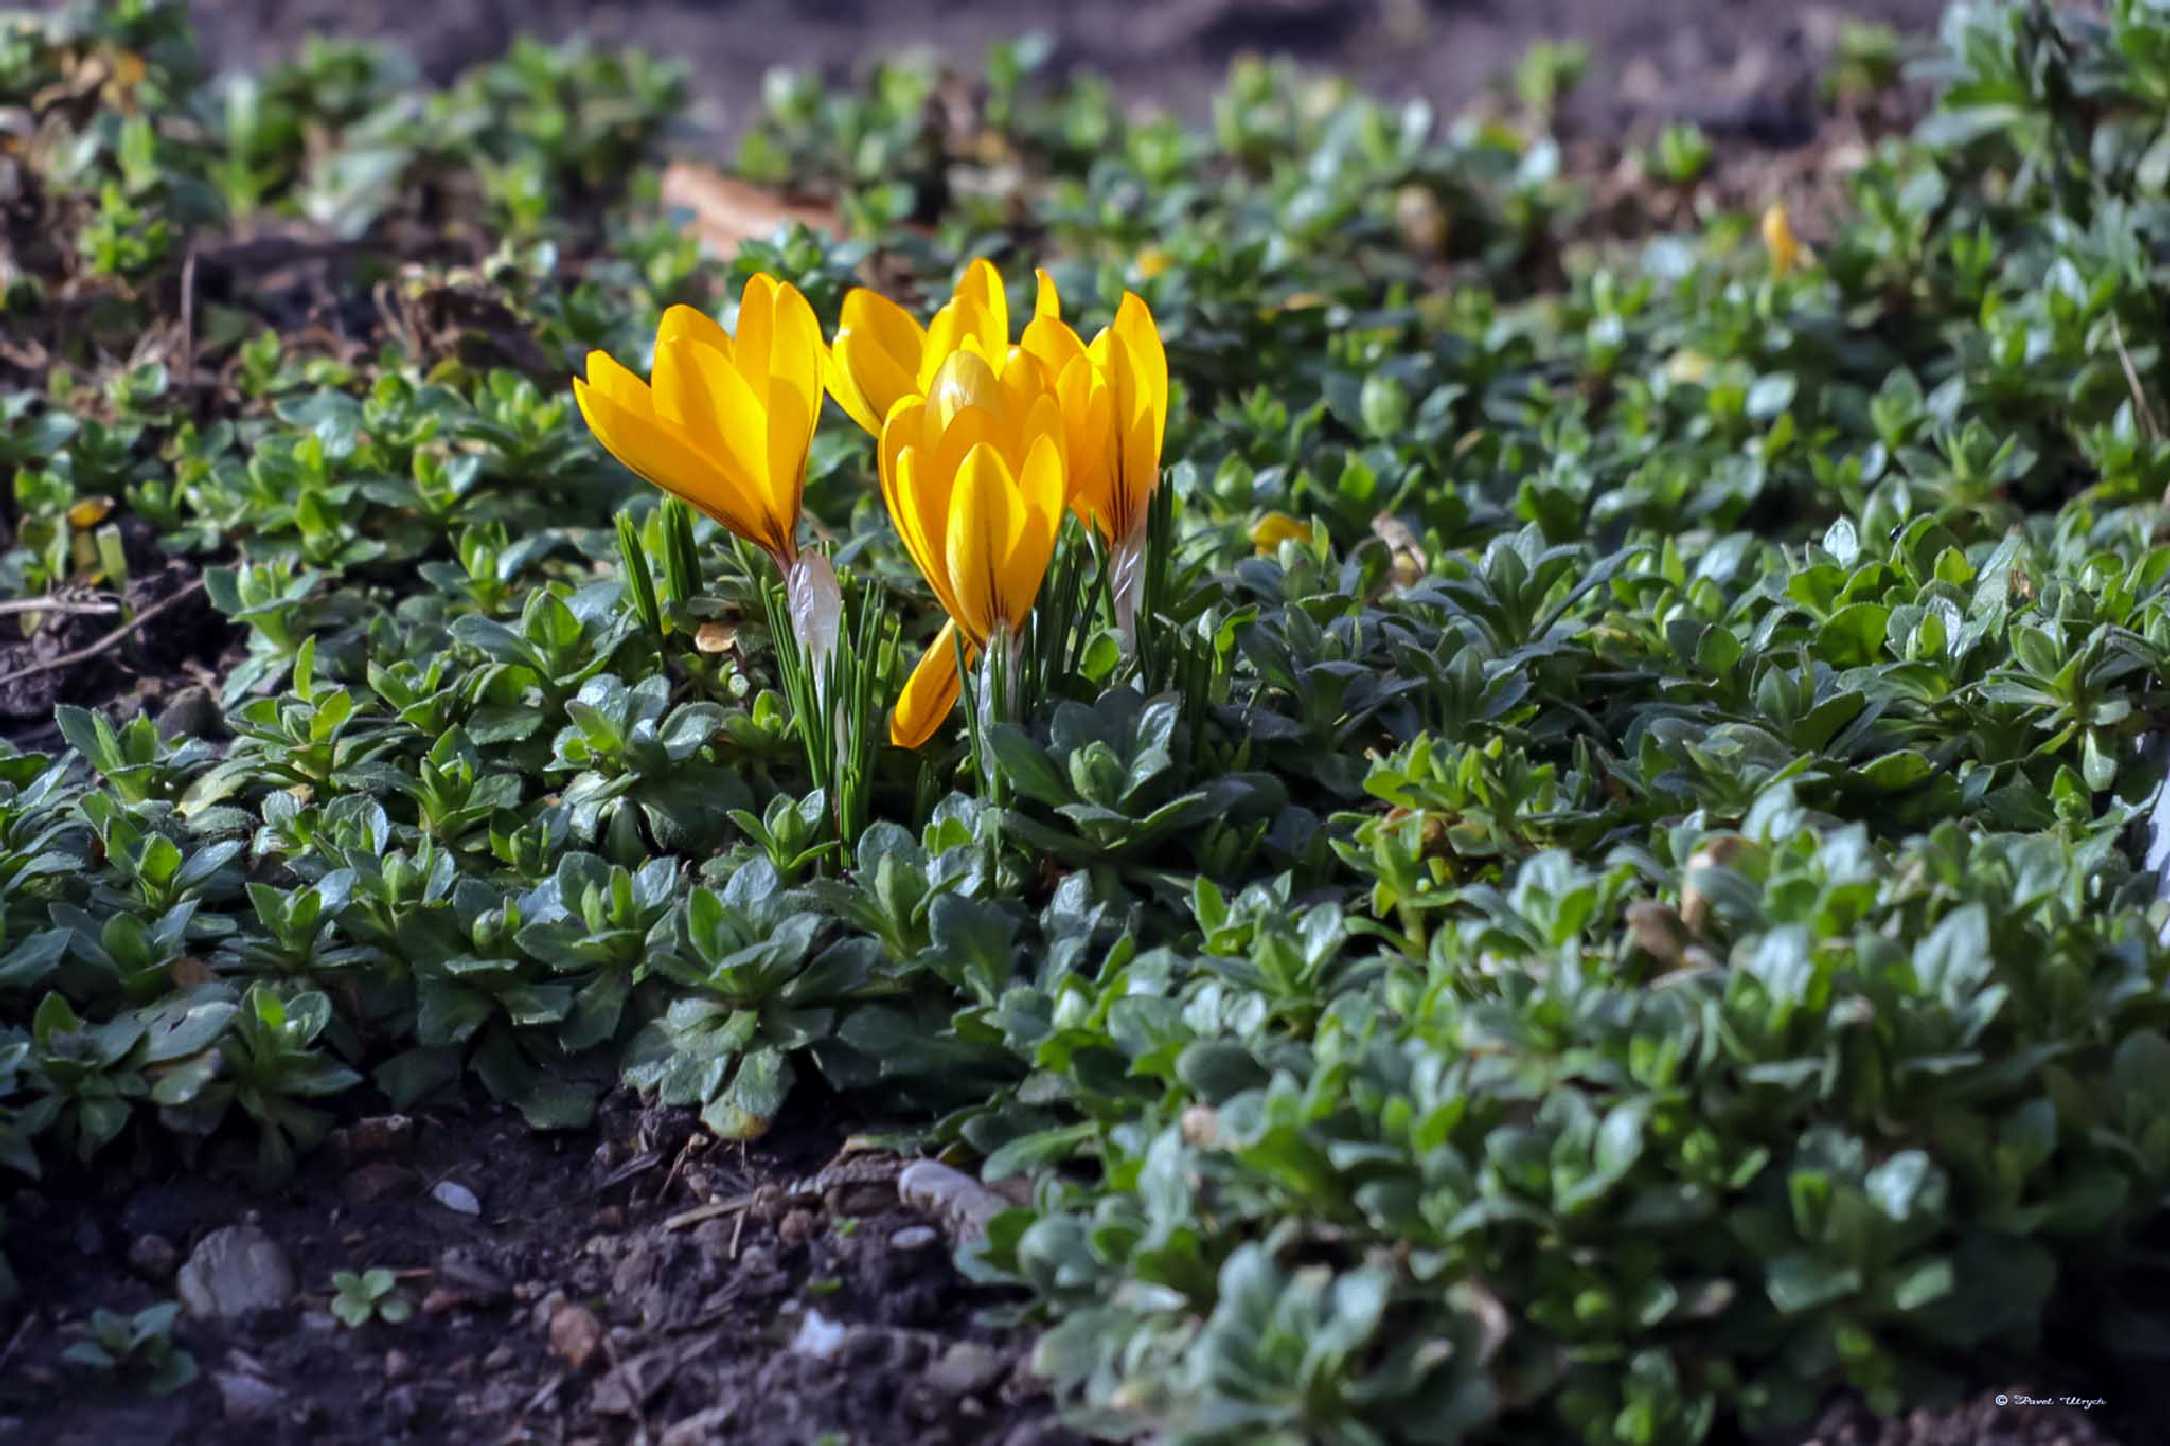 Přichází jaro - Foto Pavel Ulrych 0224 (2)